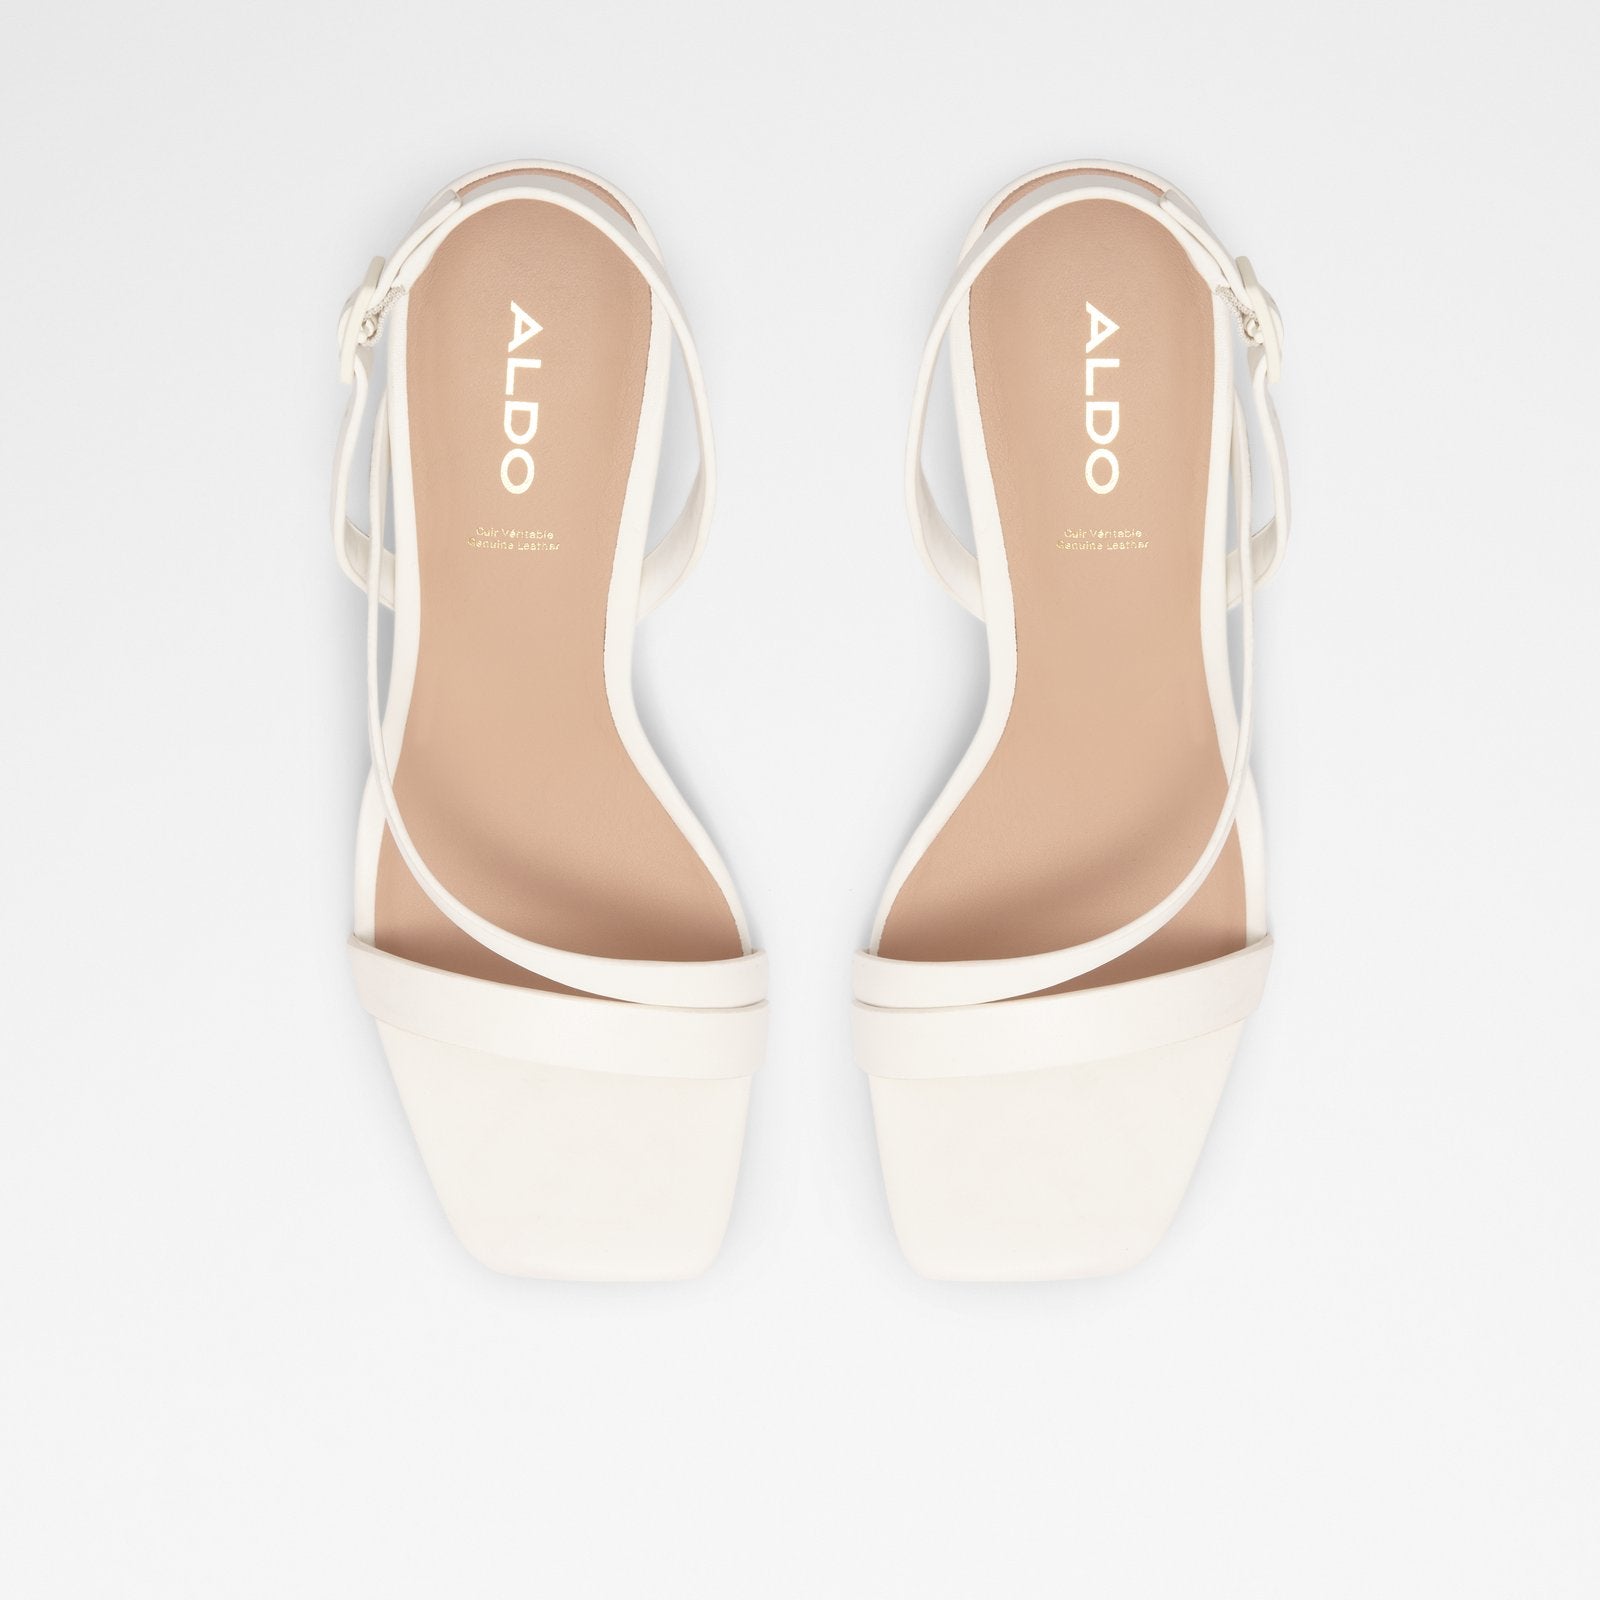 Adiemwen Women Shoes - White - ALDO KSA